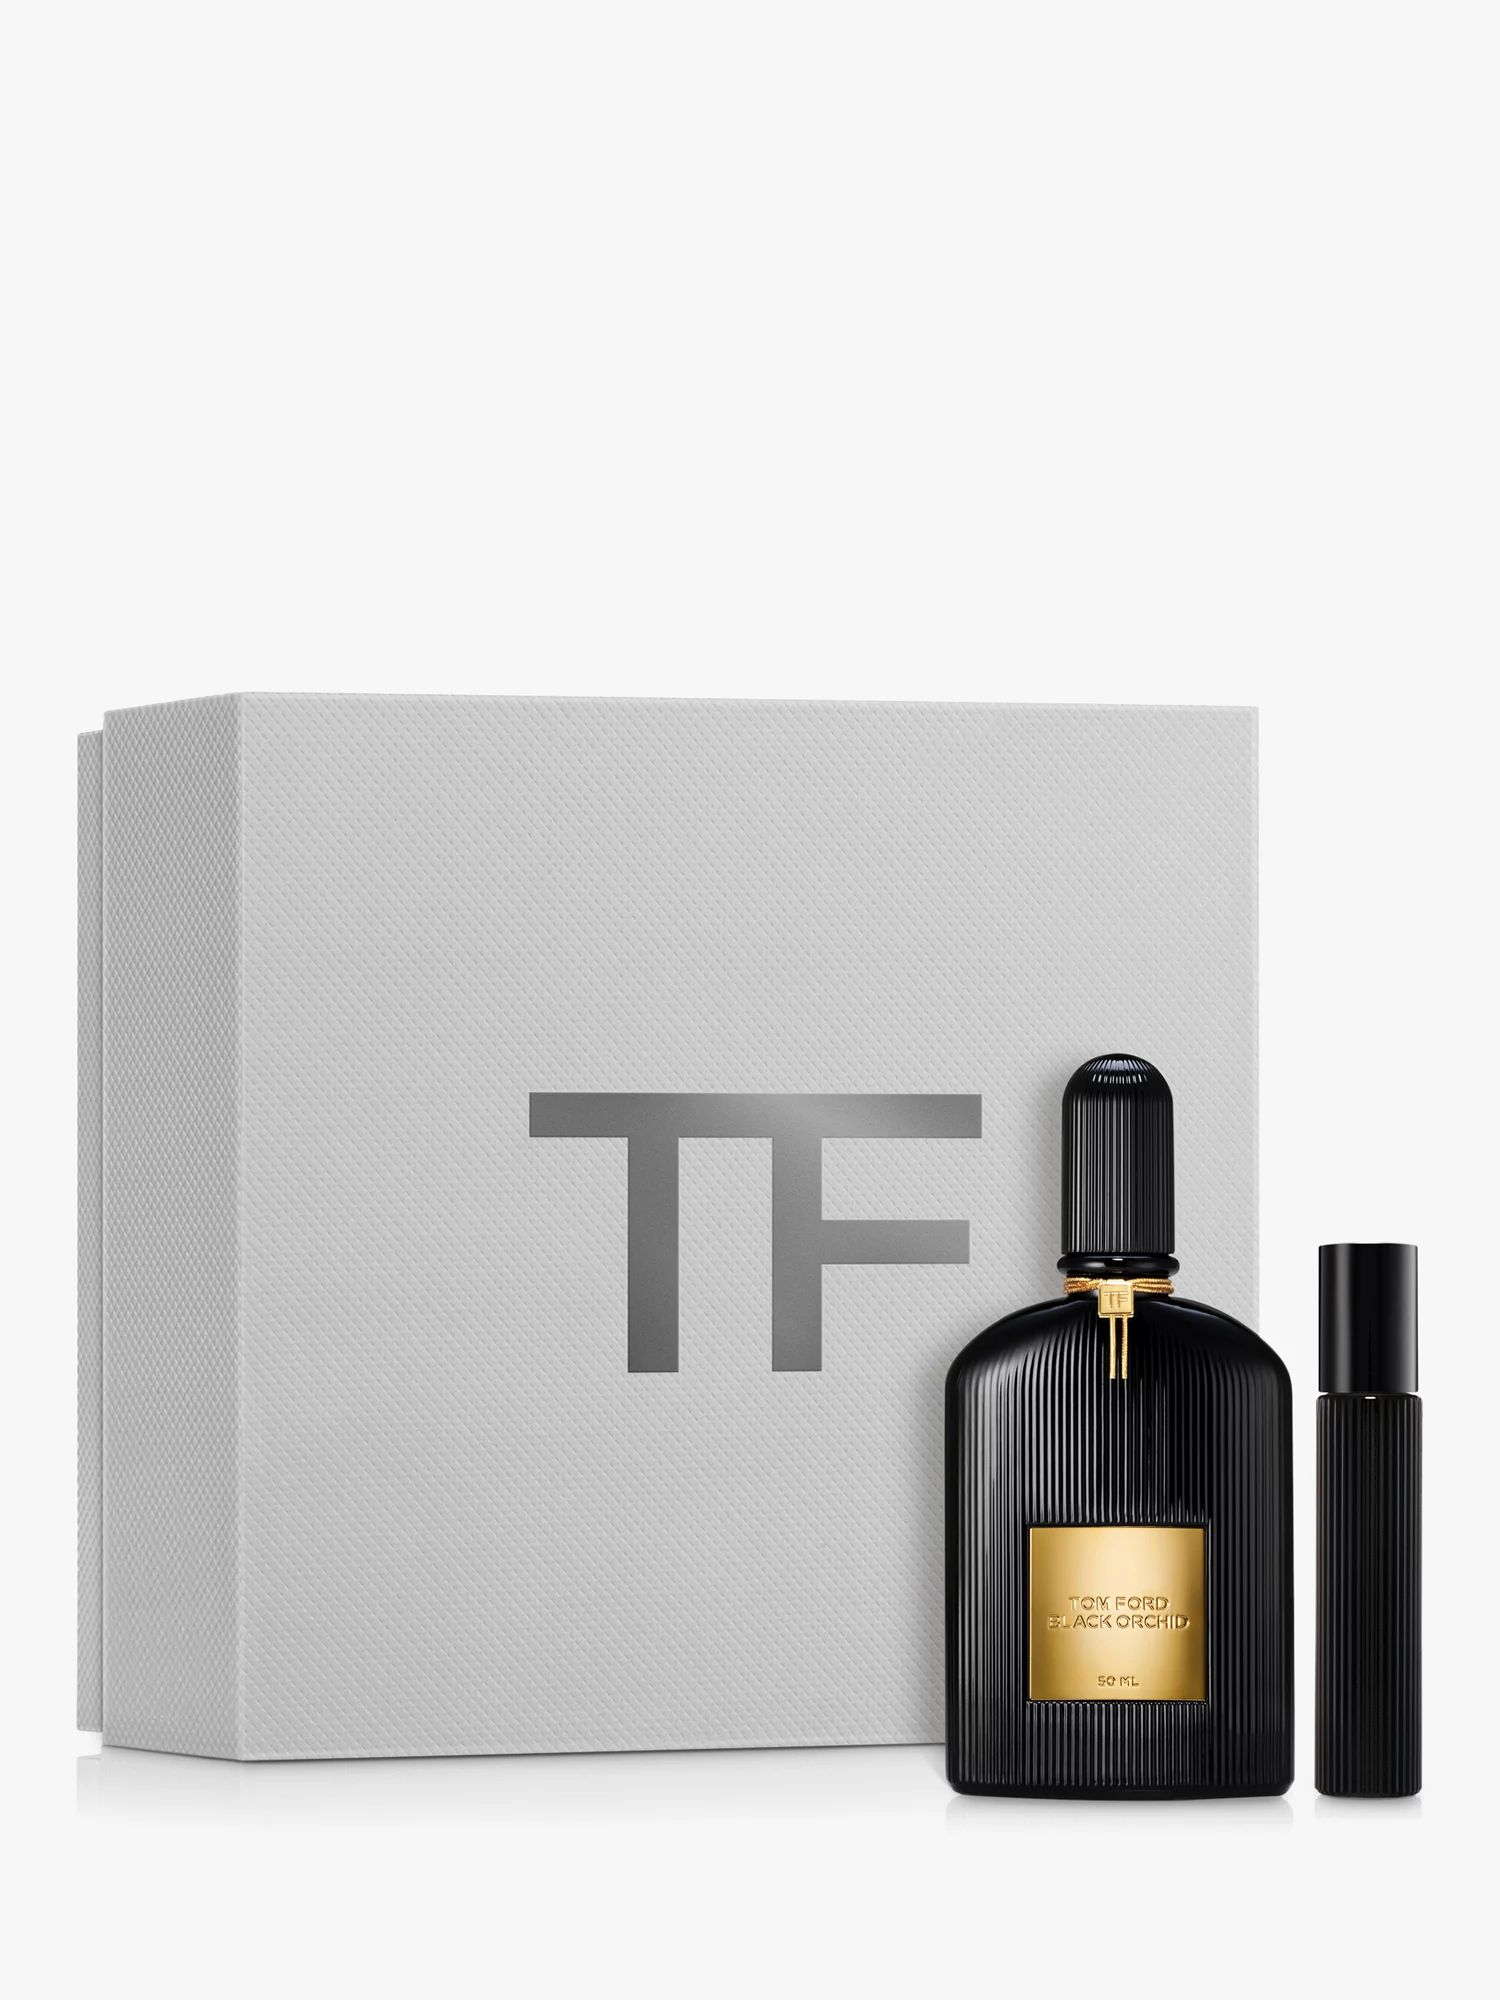 TOM FORD Black Orchid Eau de Parfum 50ml Fragrance Gift Set | John Lewis (UK)